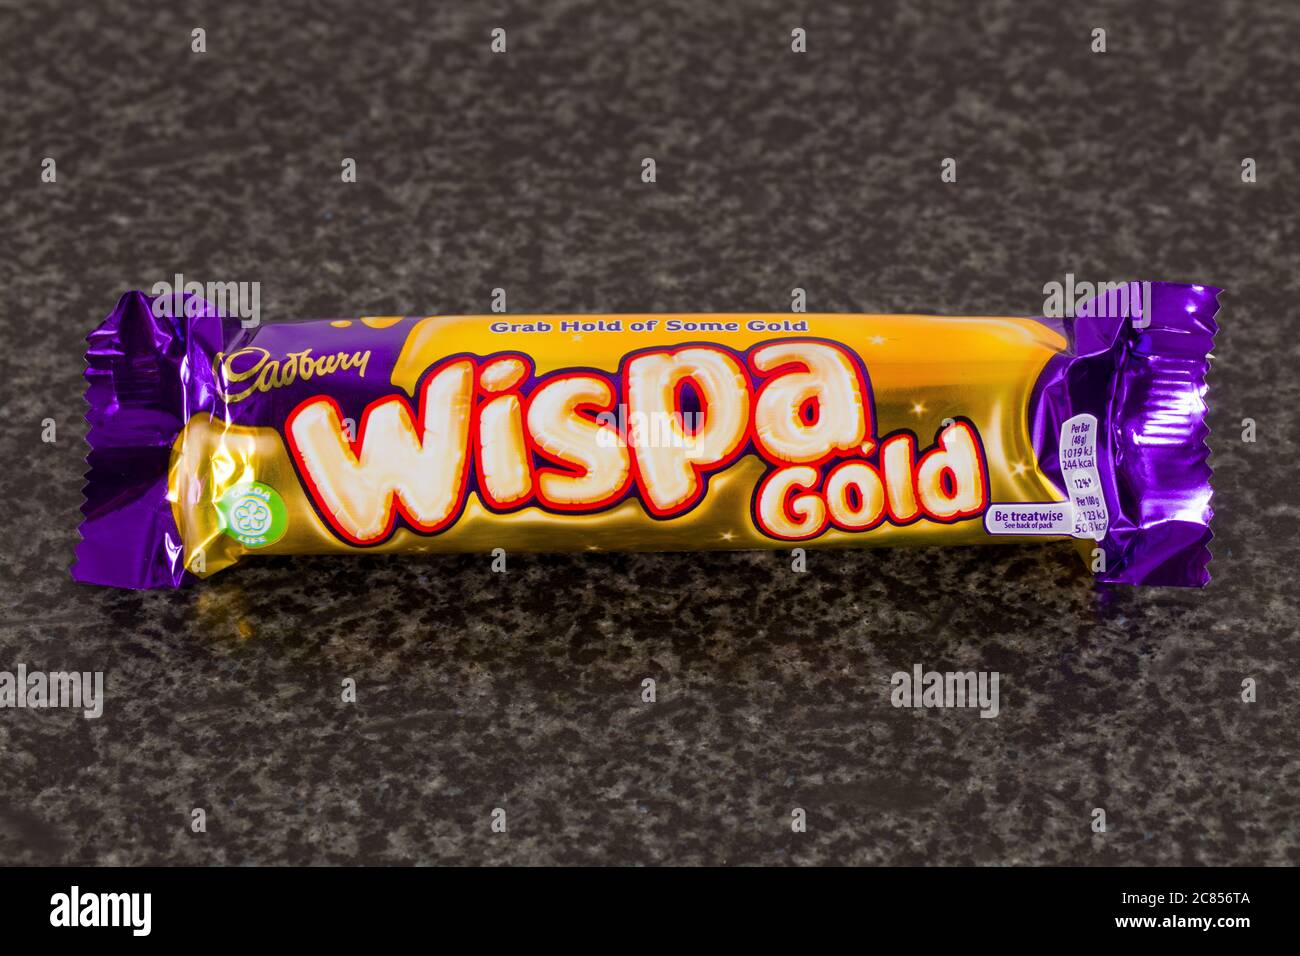 Is Cadbury wispa gold Halal, Haram or Mushbooh?